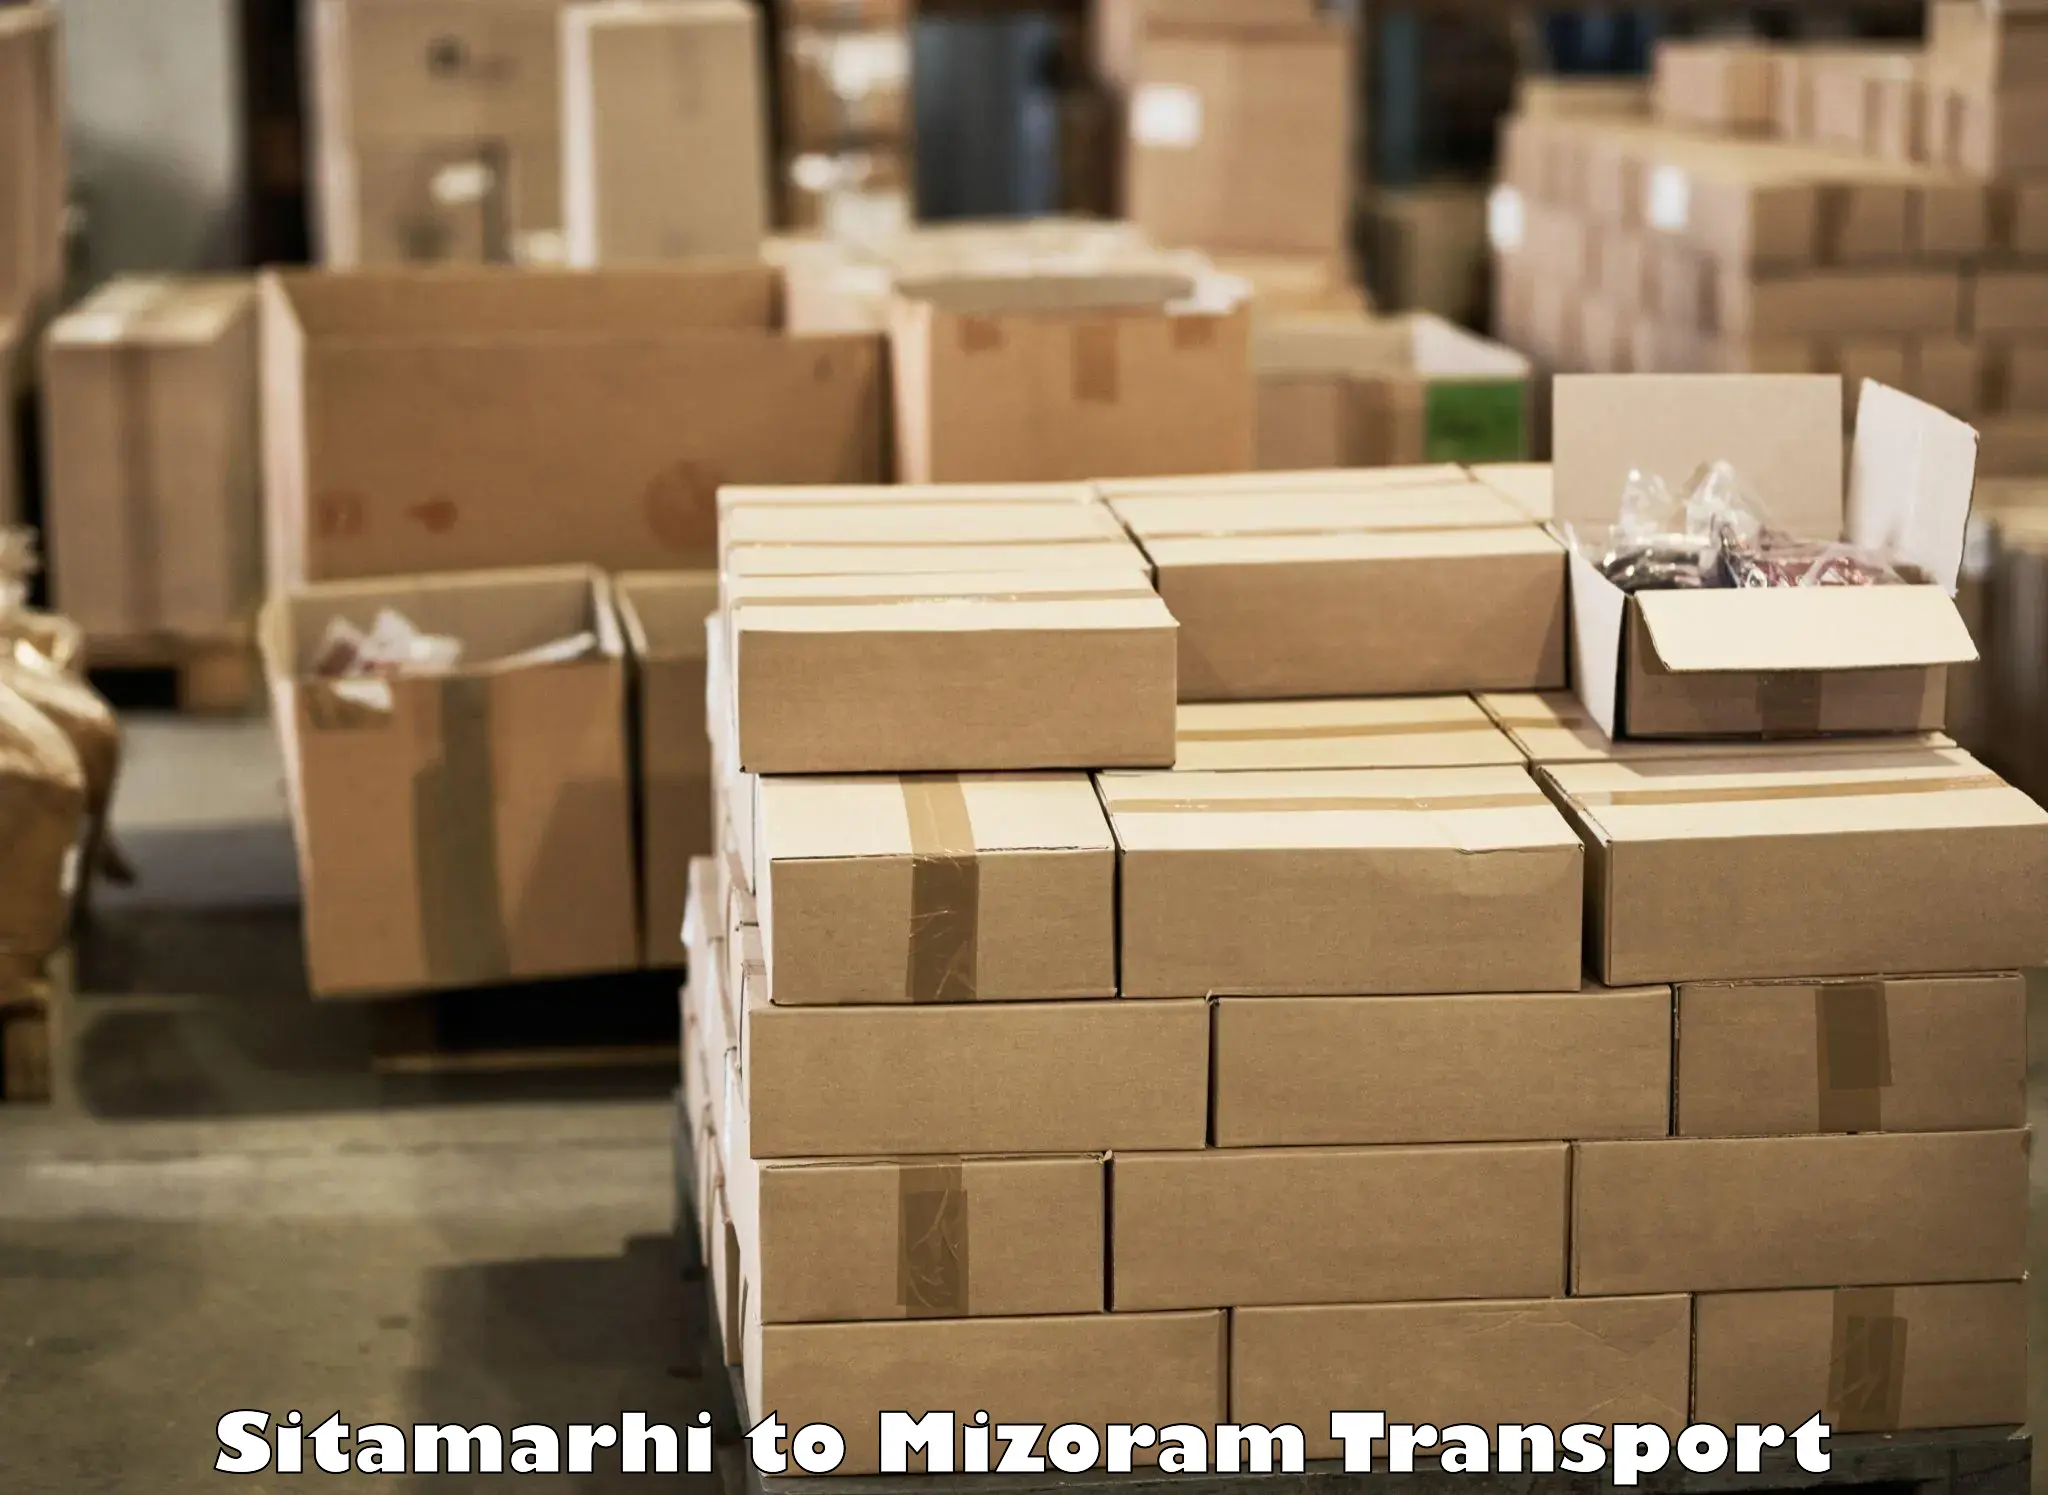 Online transport service Sitamarhi to Aizawl